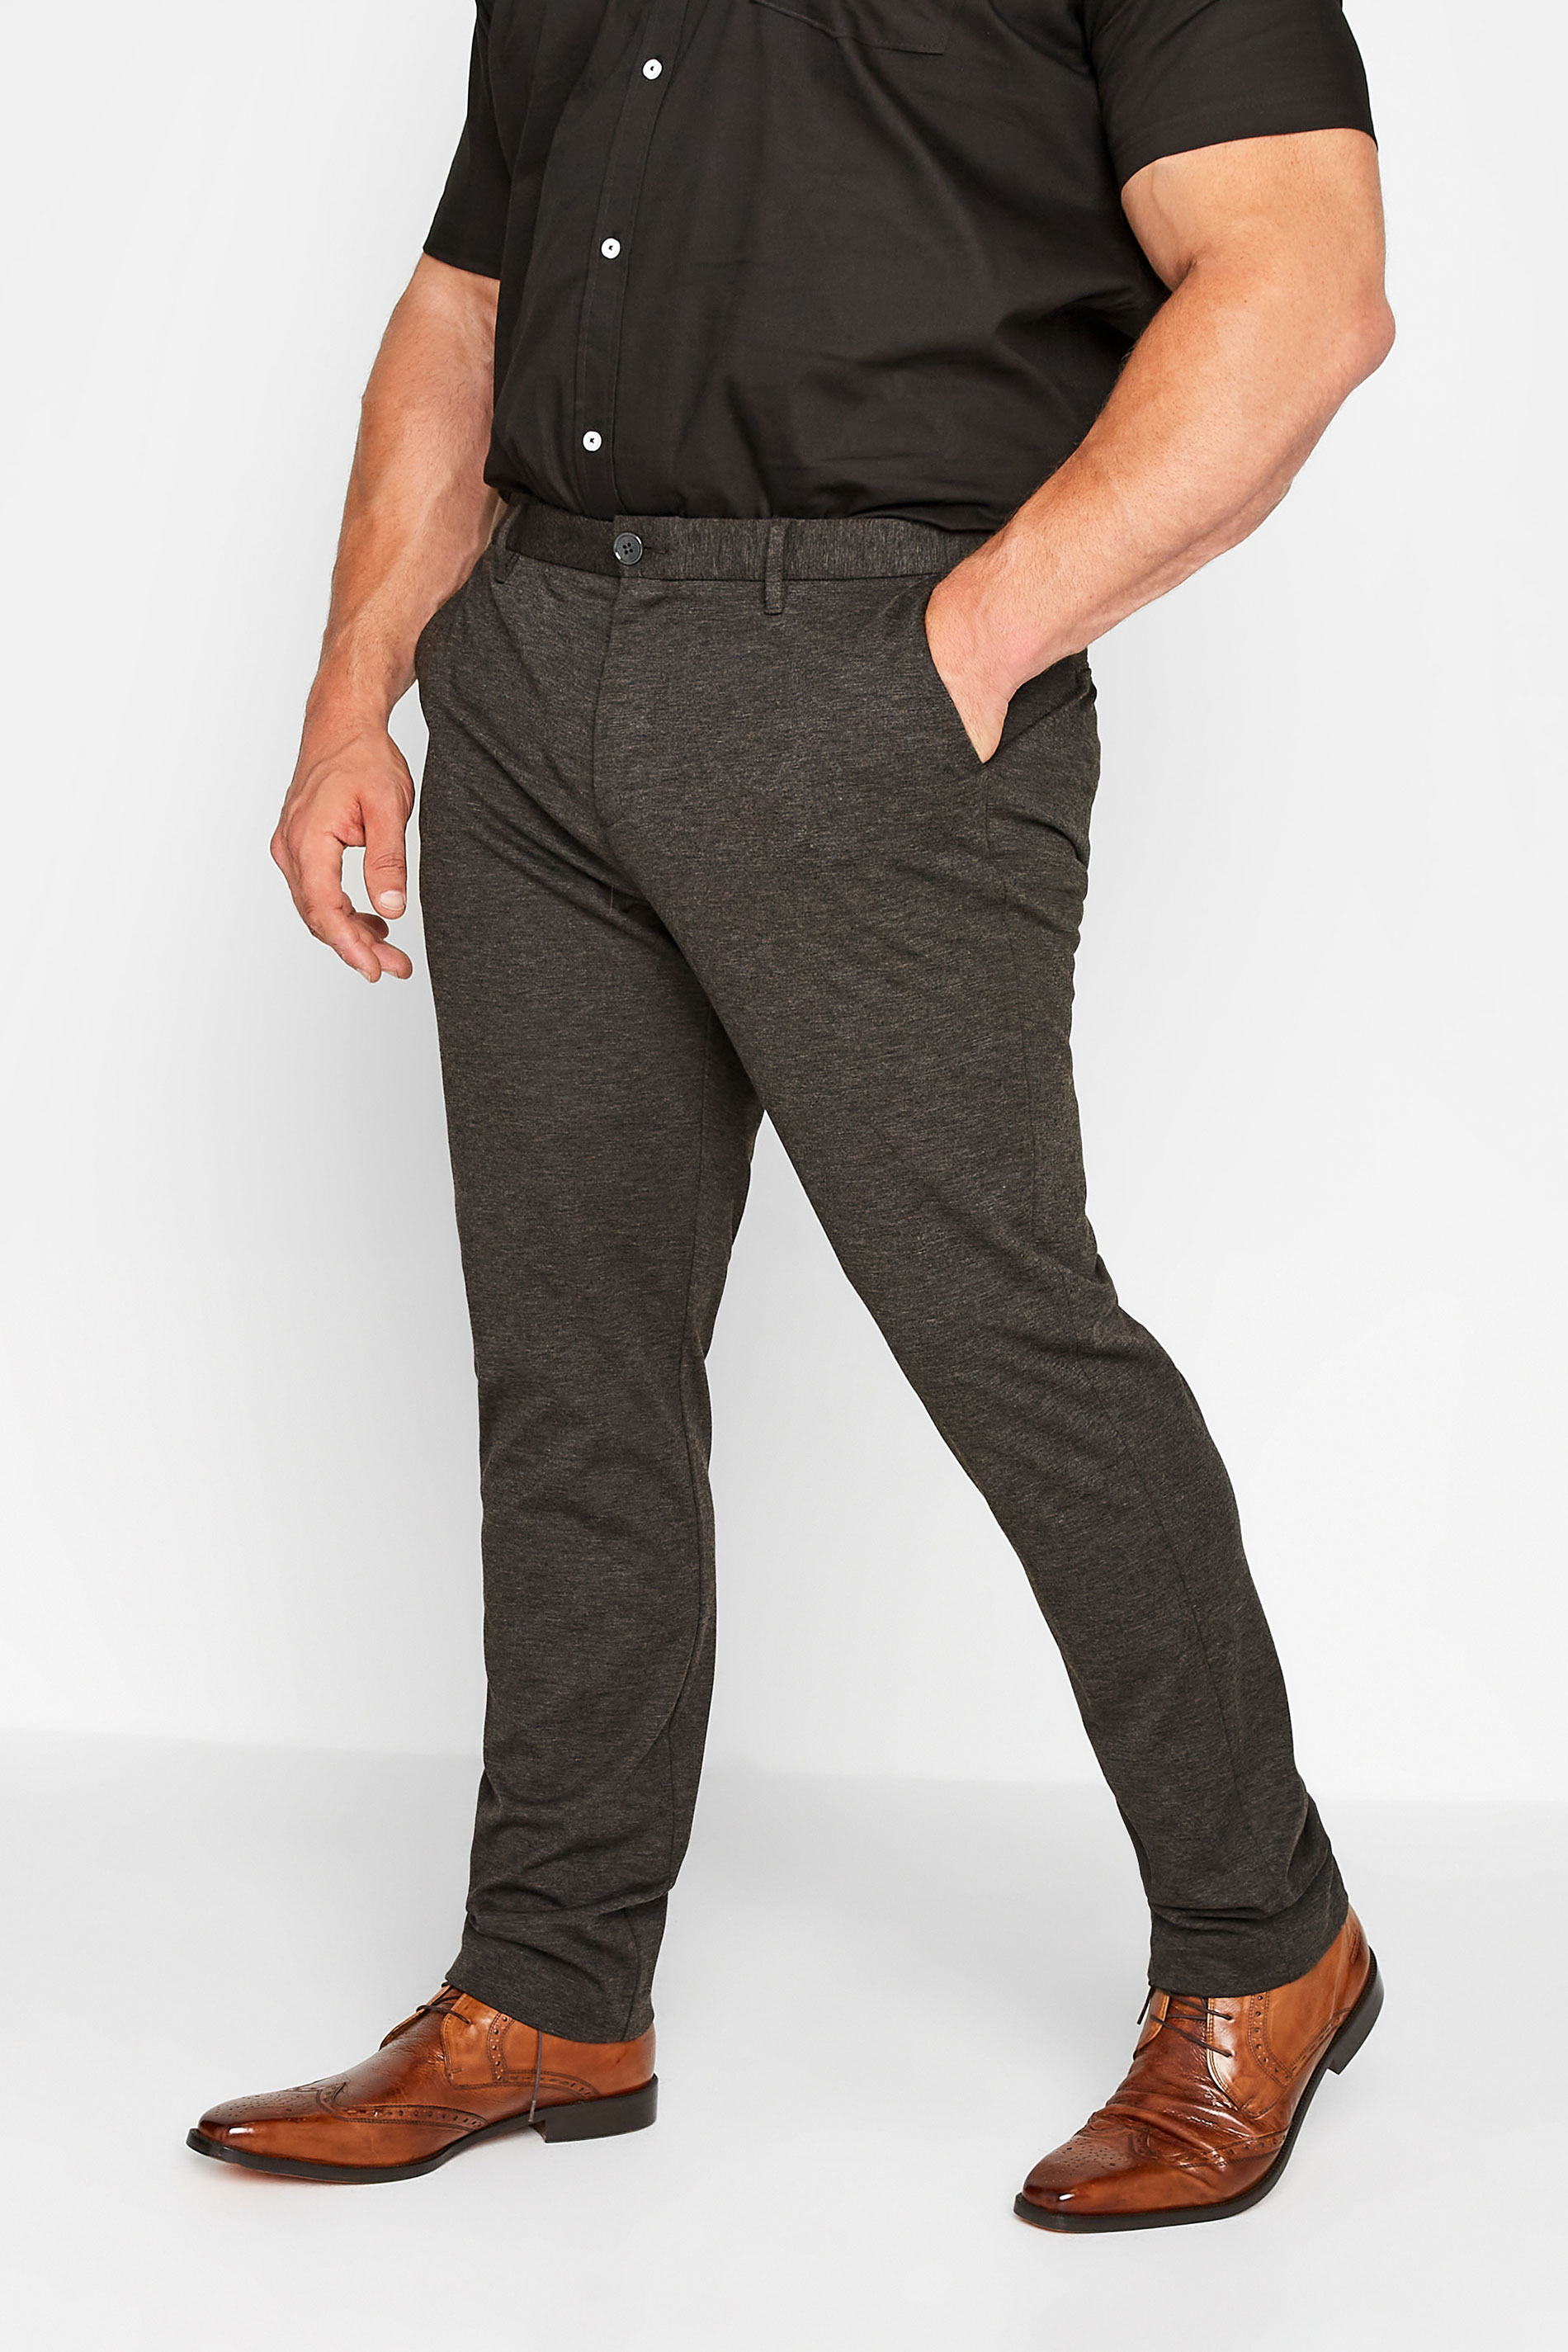 BadRhino Charcoal Grey Stretch Trousers | BadRhino 1